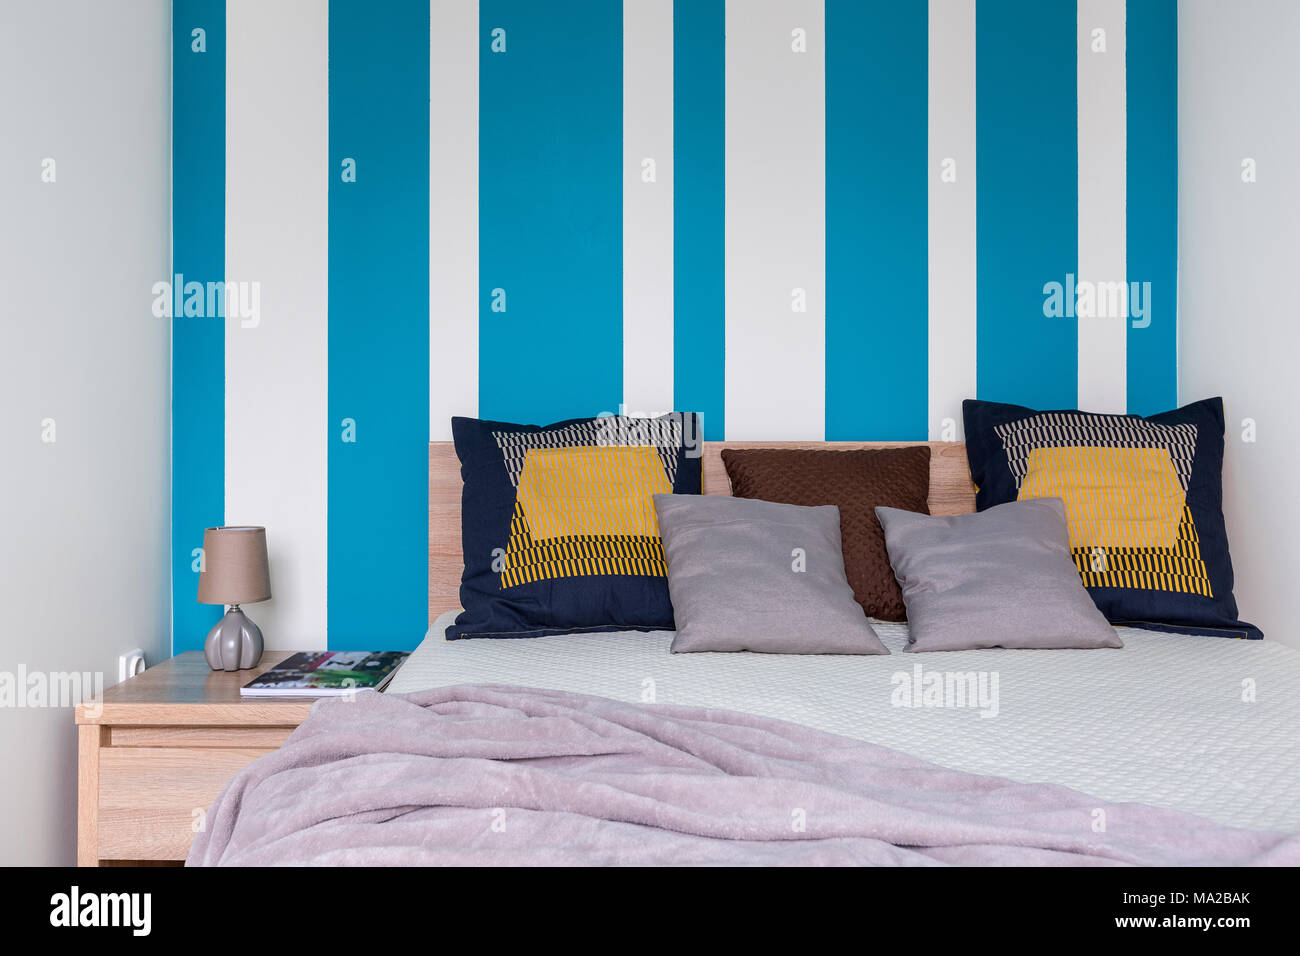 https://c8.alamy.com/compes/ma2bak/acogedor-dormitorio-con-cama-grande-cojines-decorativos-y-paredes-a-rayas-en-blanco-y-azul-ma2bak.jpg